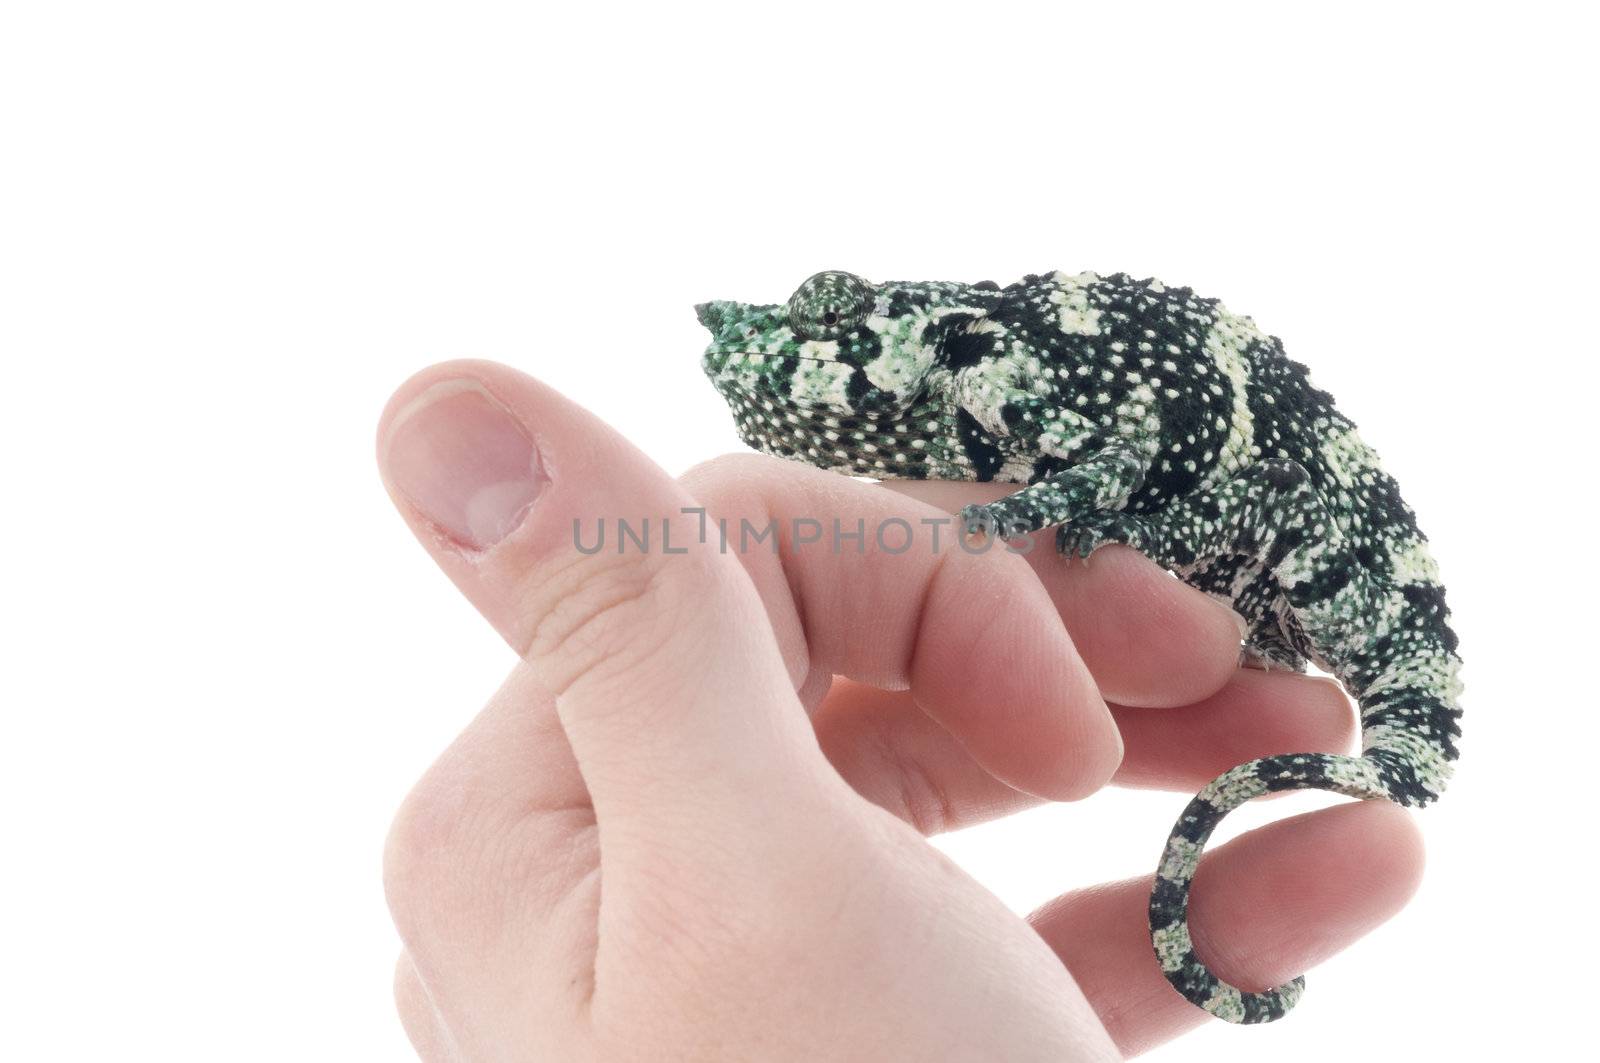 Meller Chameleon on a hand.